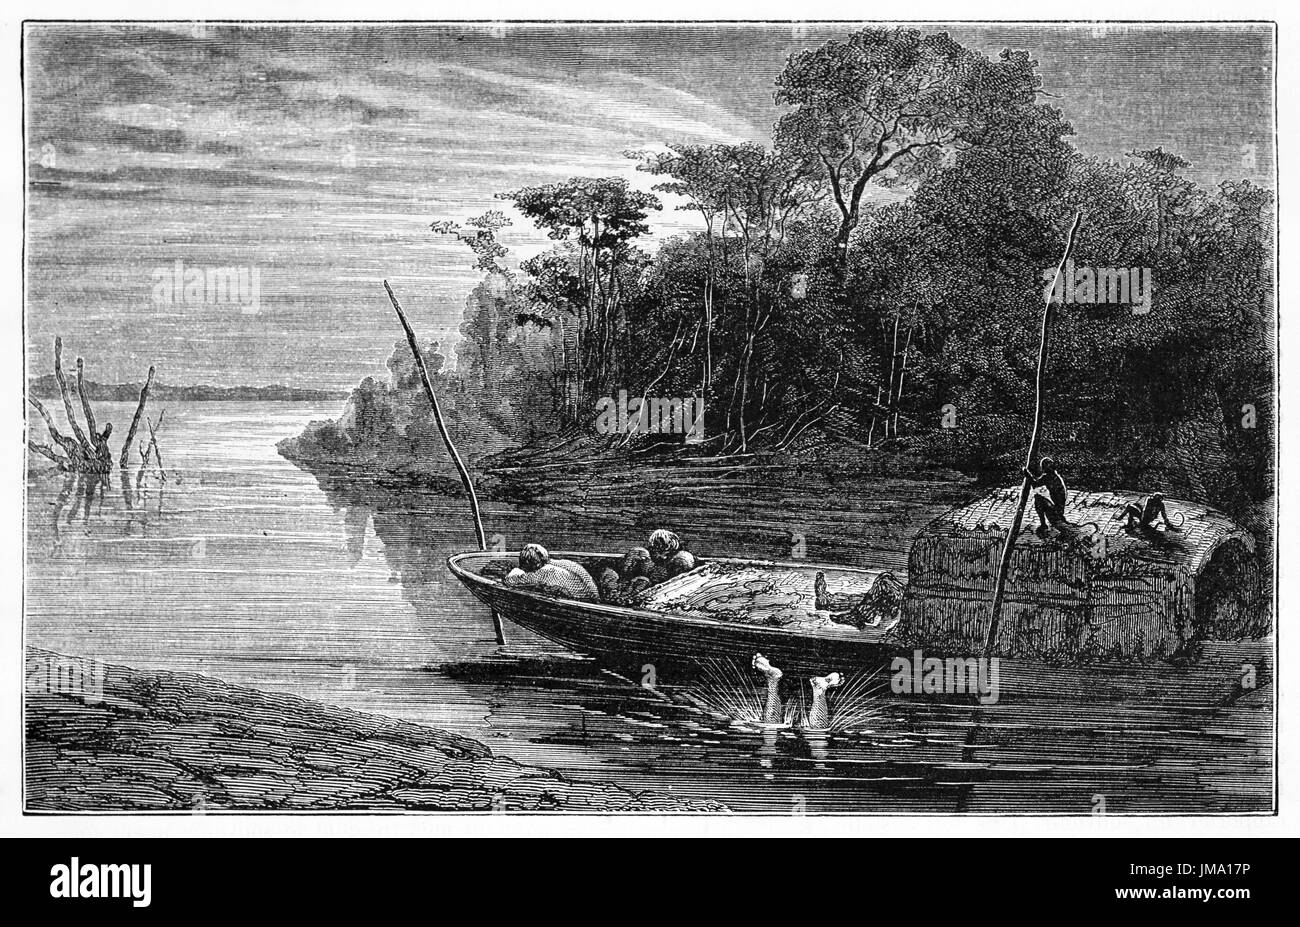 Vecchia illustrazione di un uomo la caduta in acqua da una barca nel fiume del Amazon. Creato da Riou, Biard e Maurand, pubblicato in Le Tour du Monde, Parigi, 1861 Foto Stock